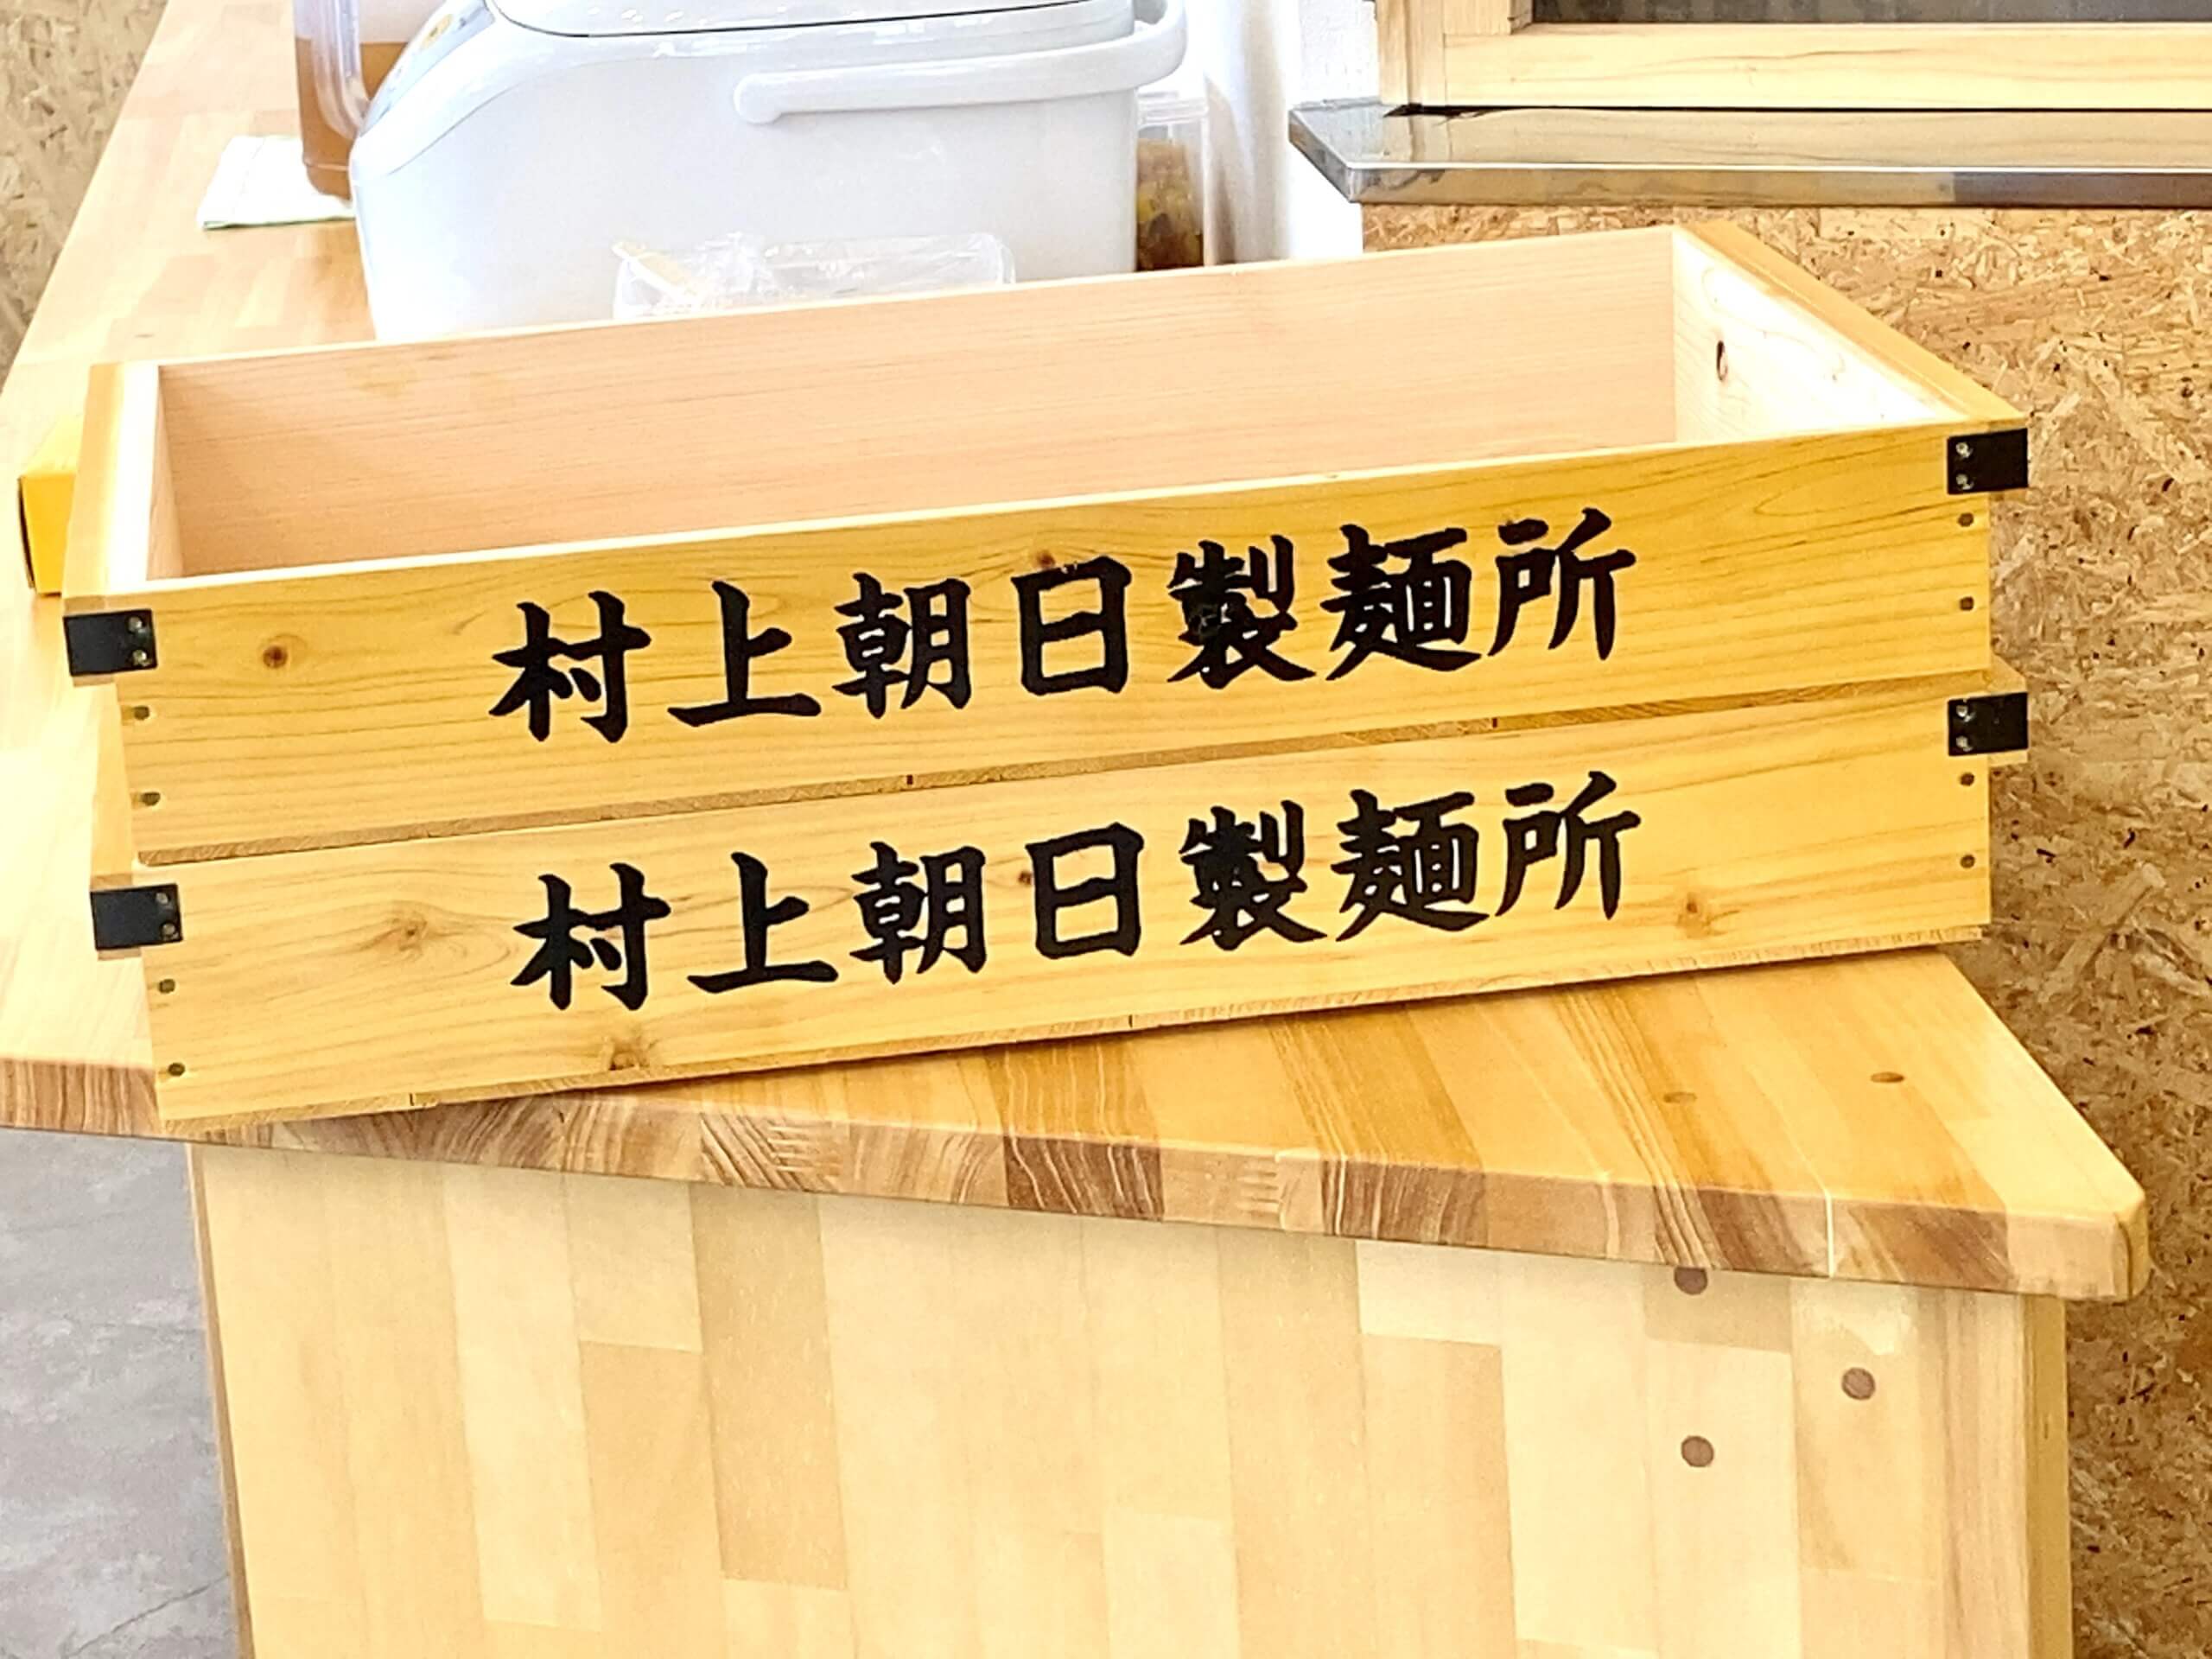 村上朝日製麺の麺箱